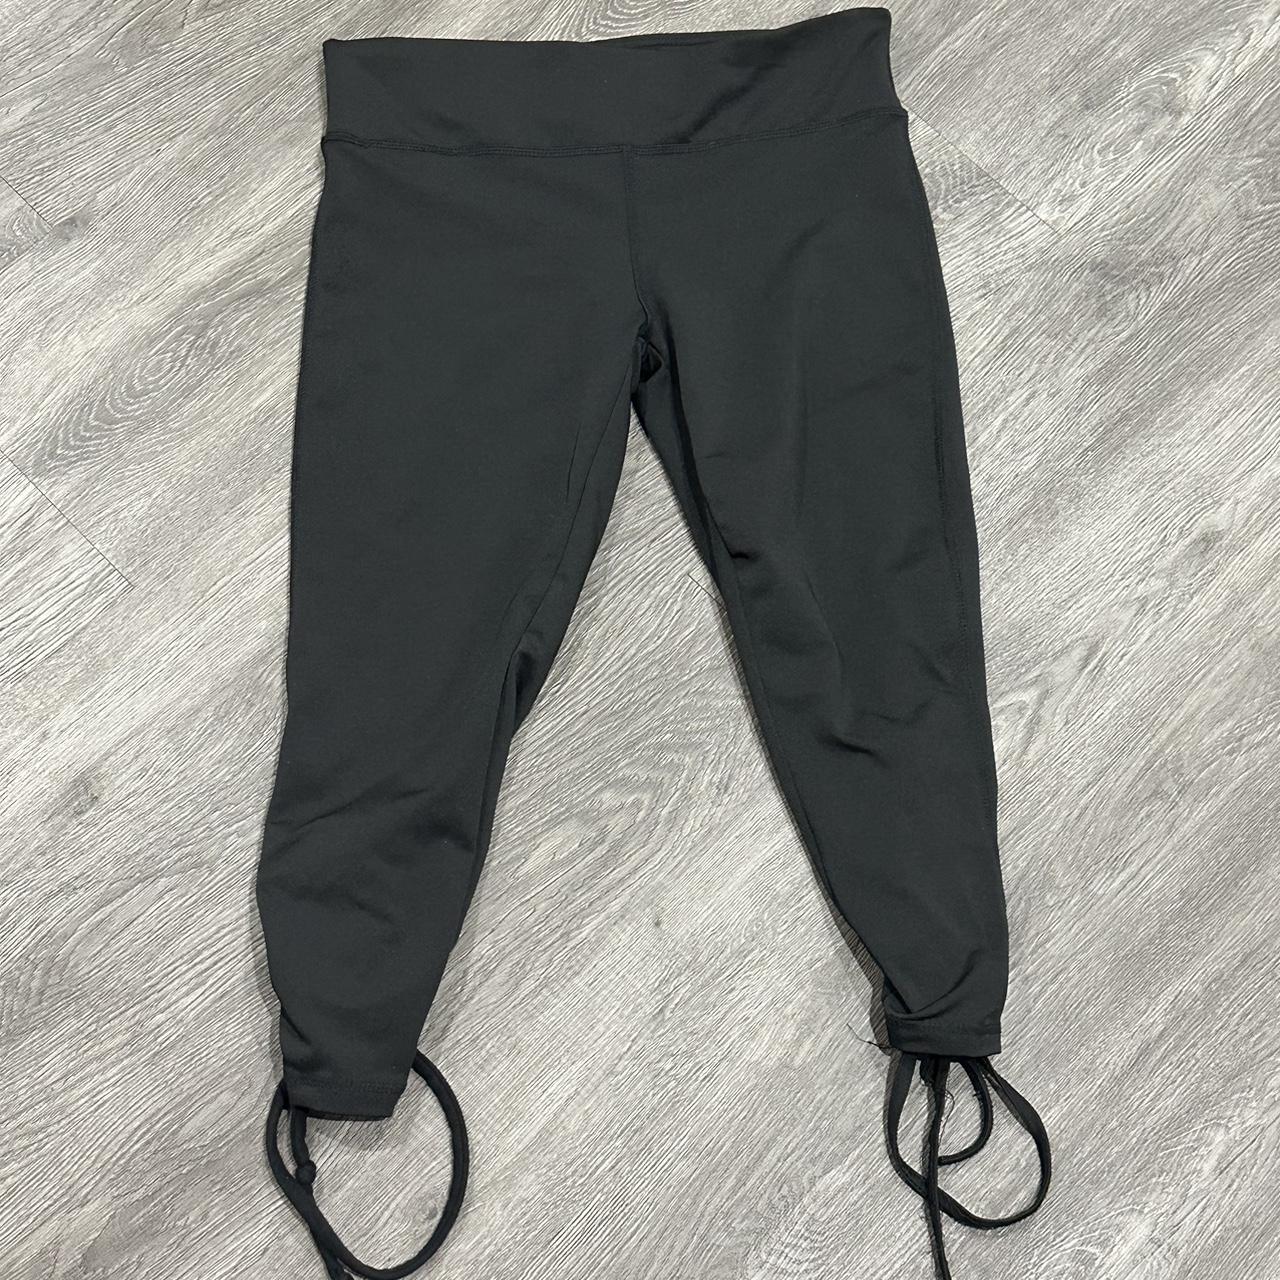 Black Capri Pants Adult Size XL Casual Athletic Gym - Depop